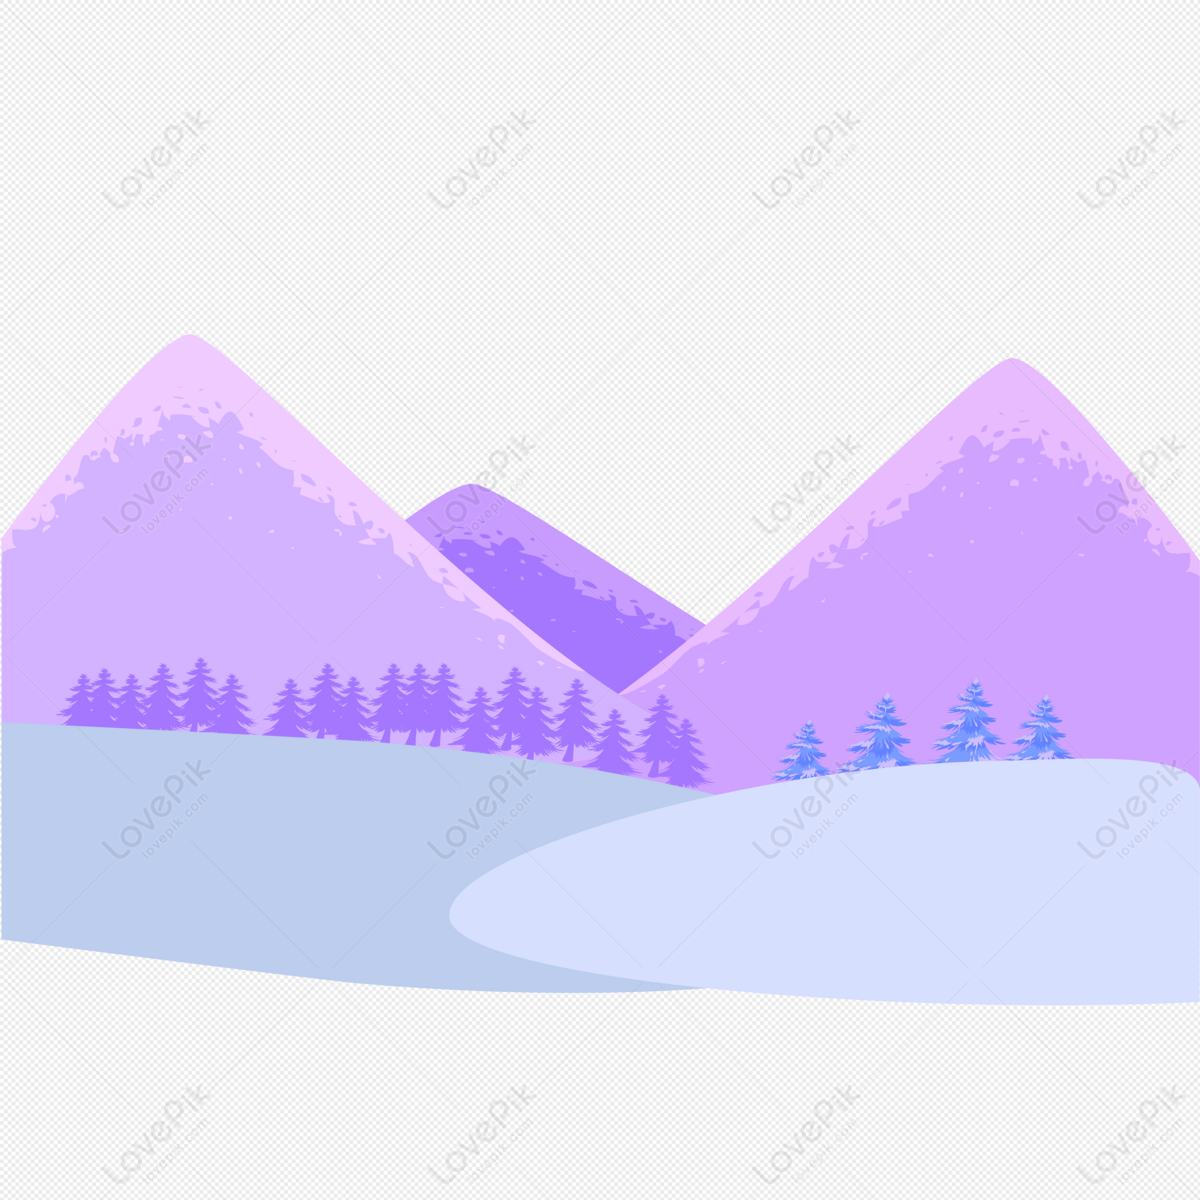 snow mountain clip art